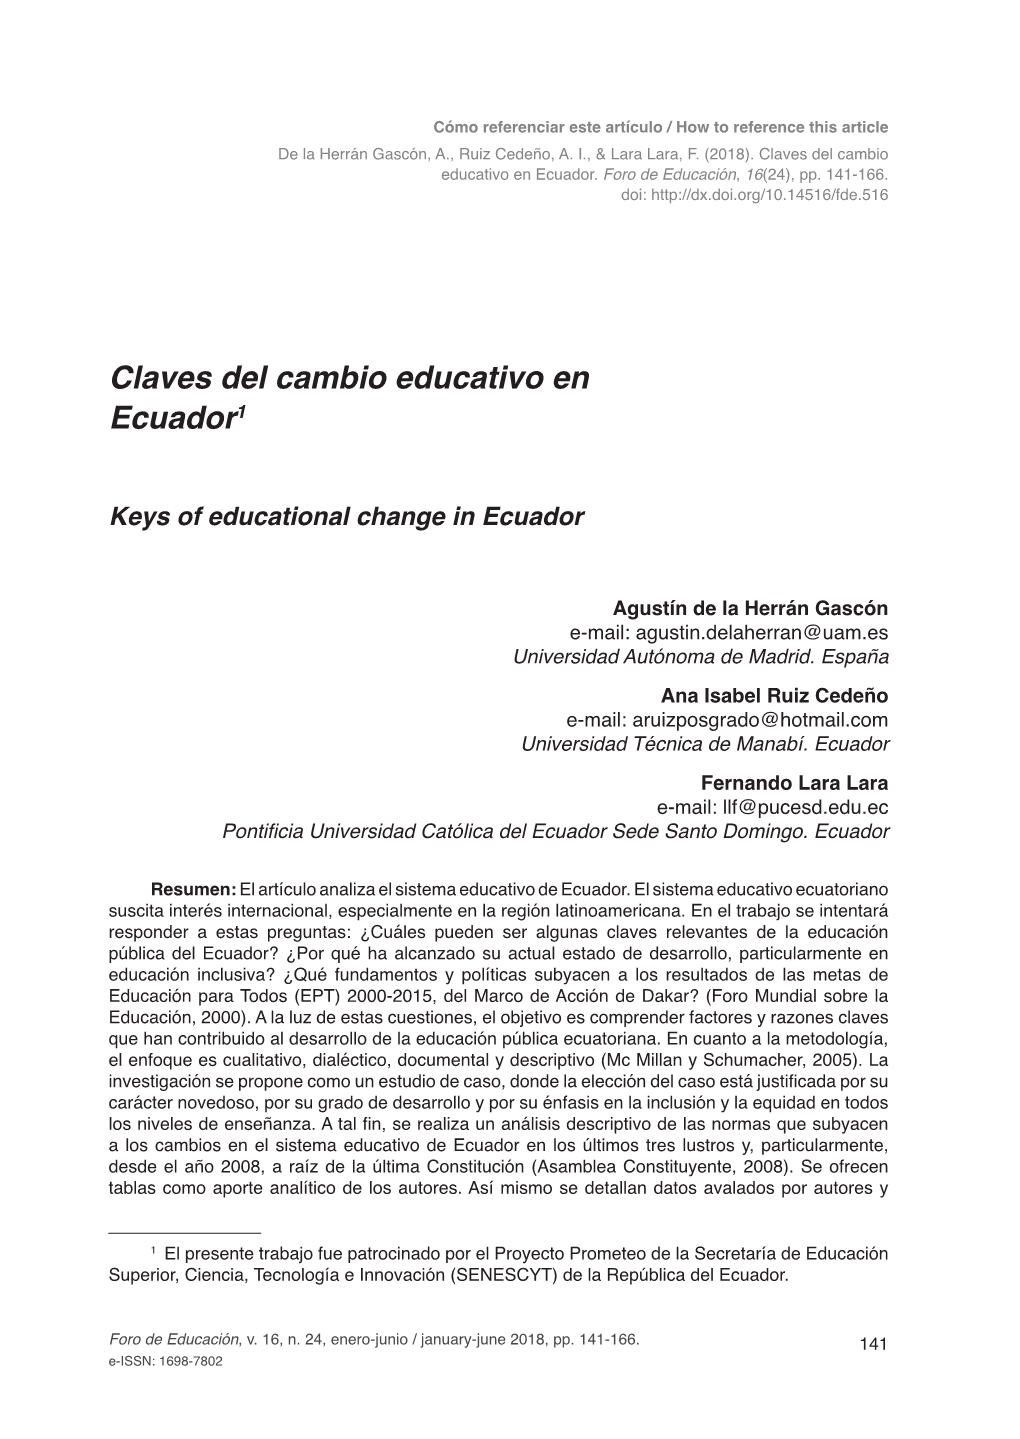 Claves Del Cambio Educativo En Ecuador1